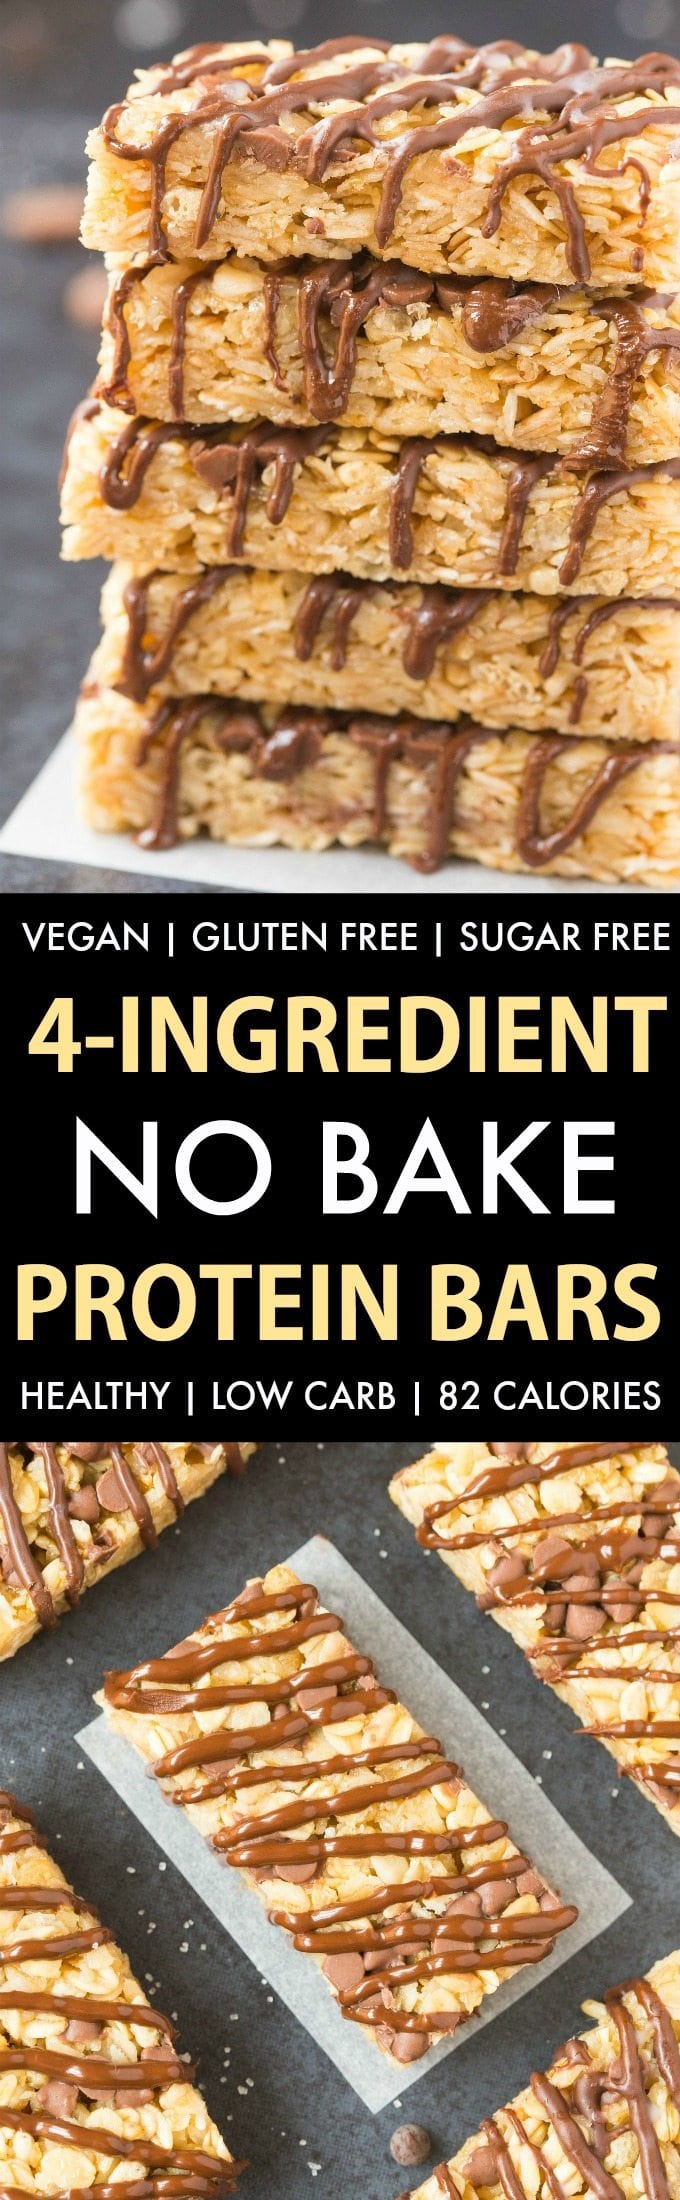 protein bars recipe